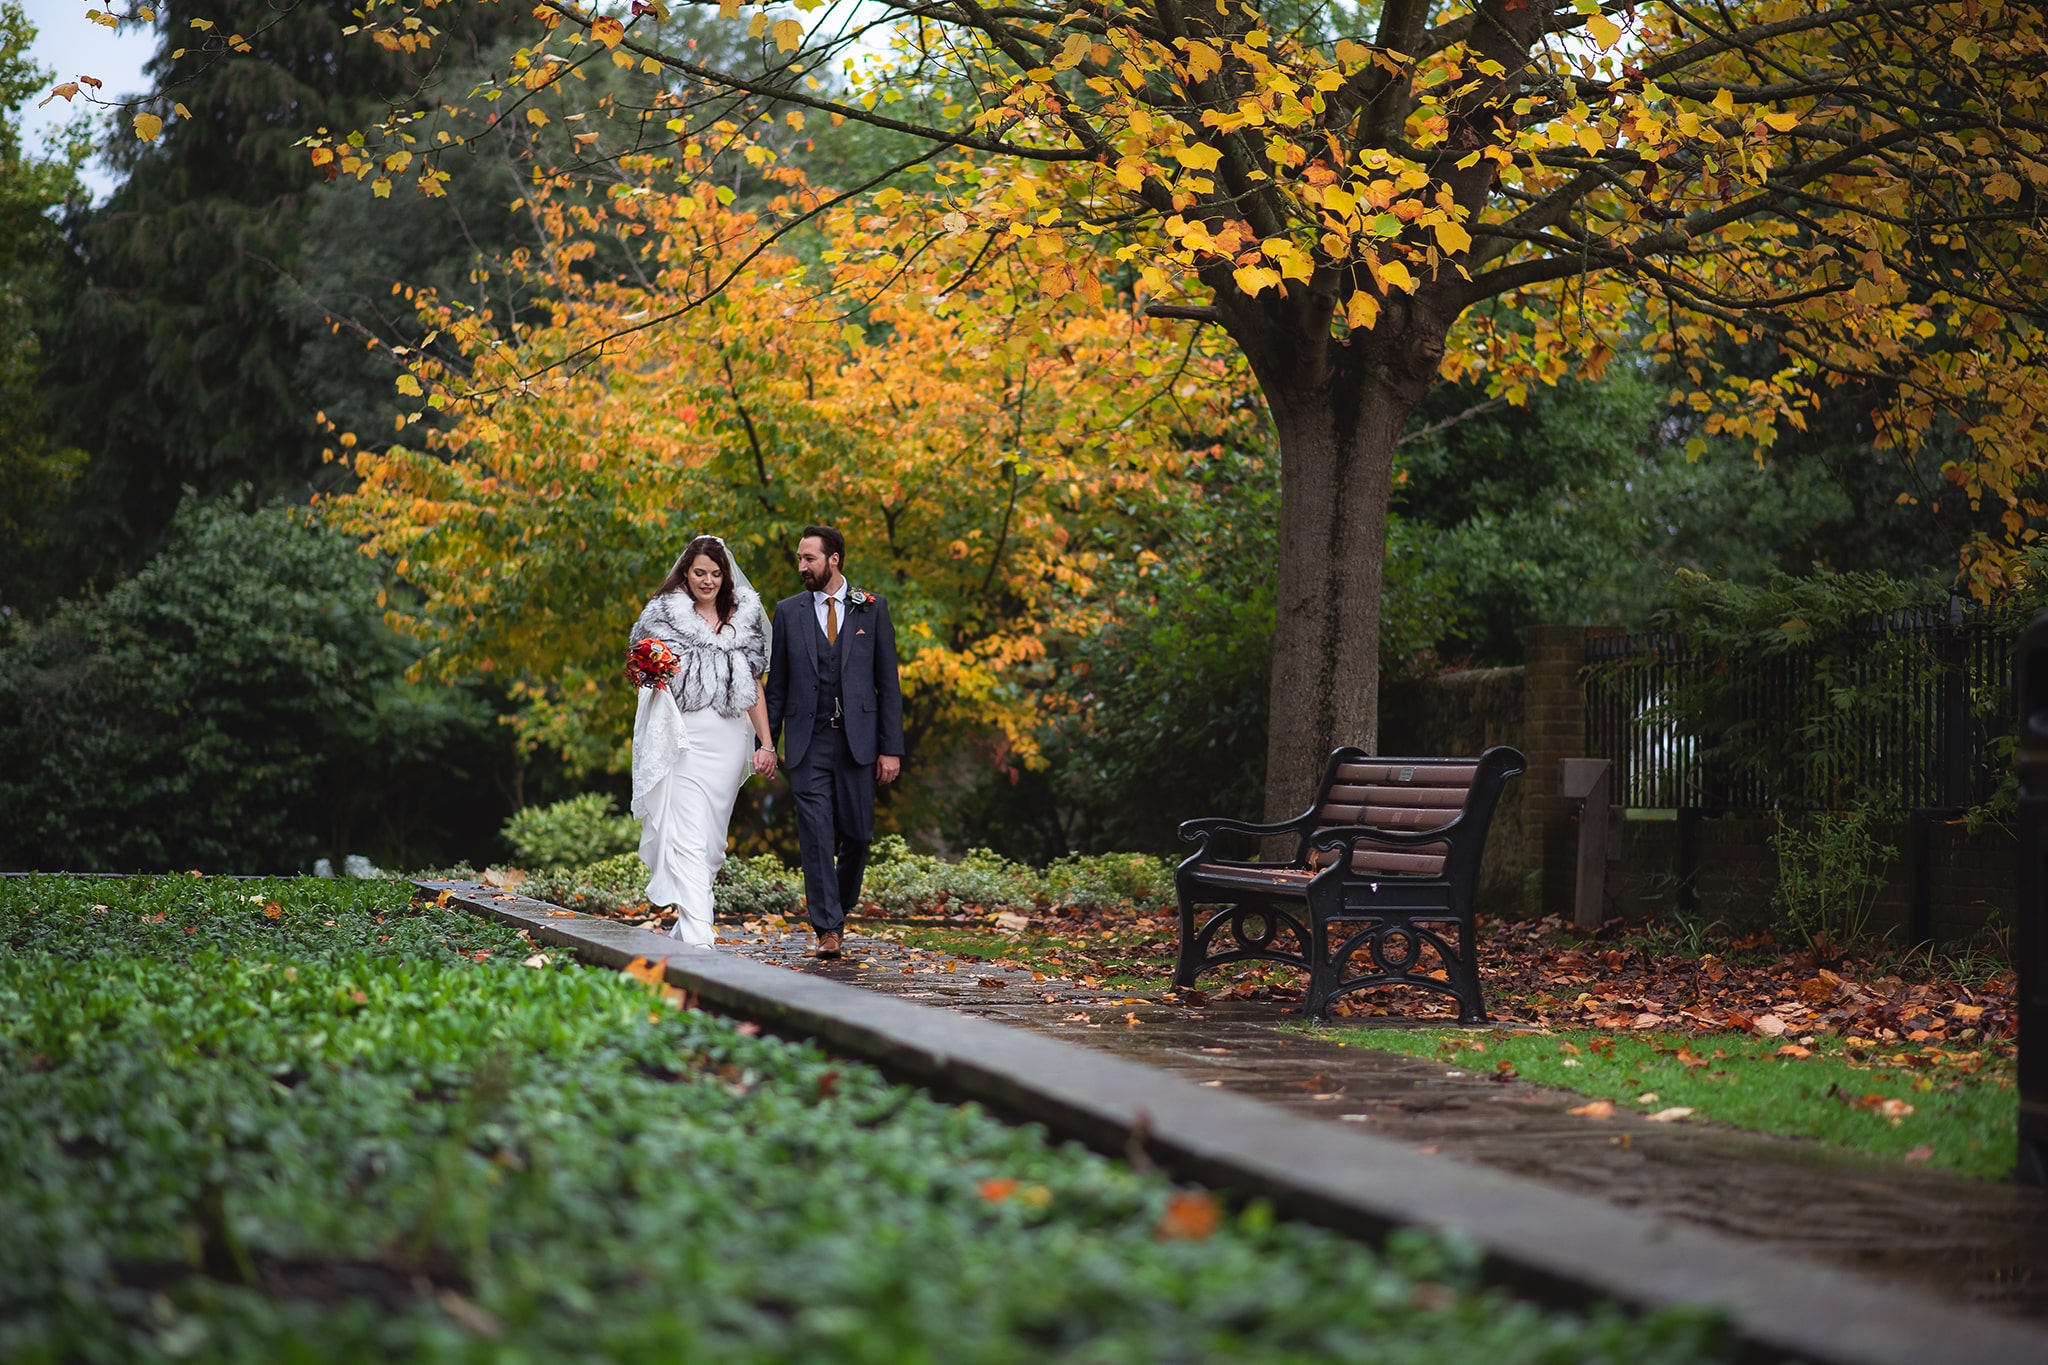 Wedding couple holding hands, walking in Autumn garden taken by Wedding Photgrapher Emma Seaney